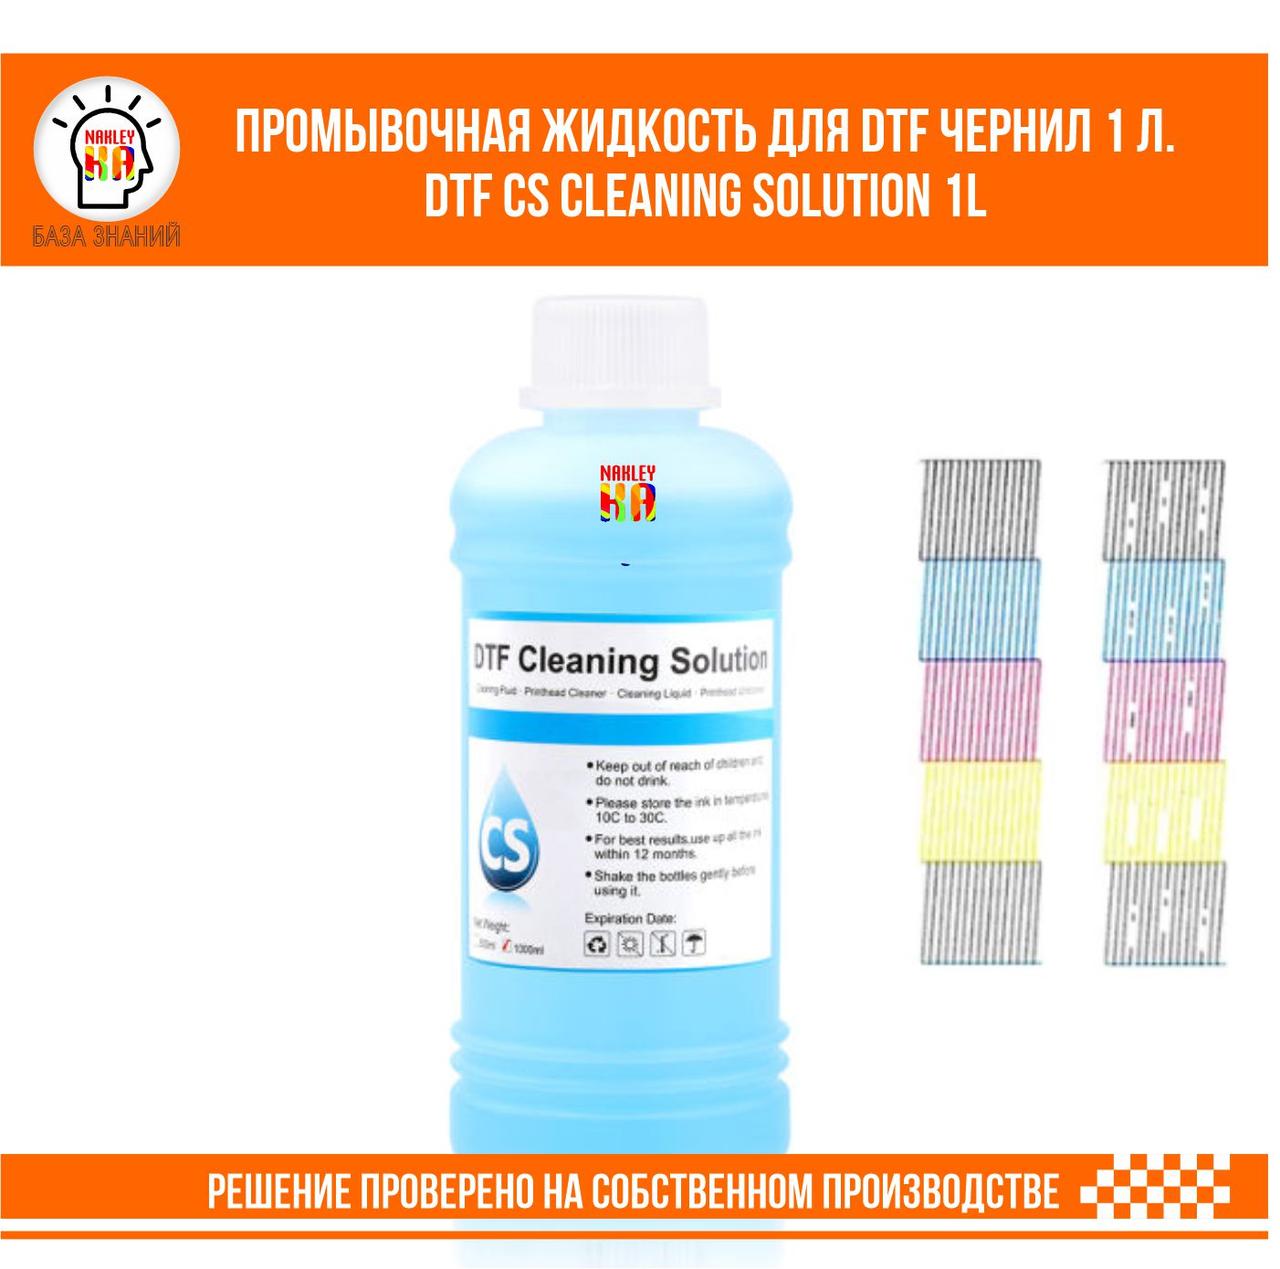 DTF CS Cleaning Solution Промывочная жидкость для DTF чернил 100 мл.